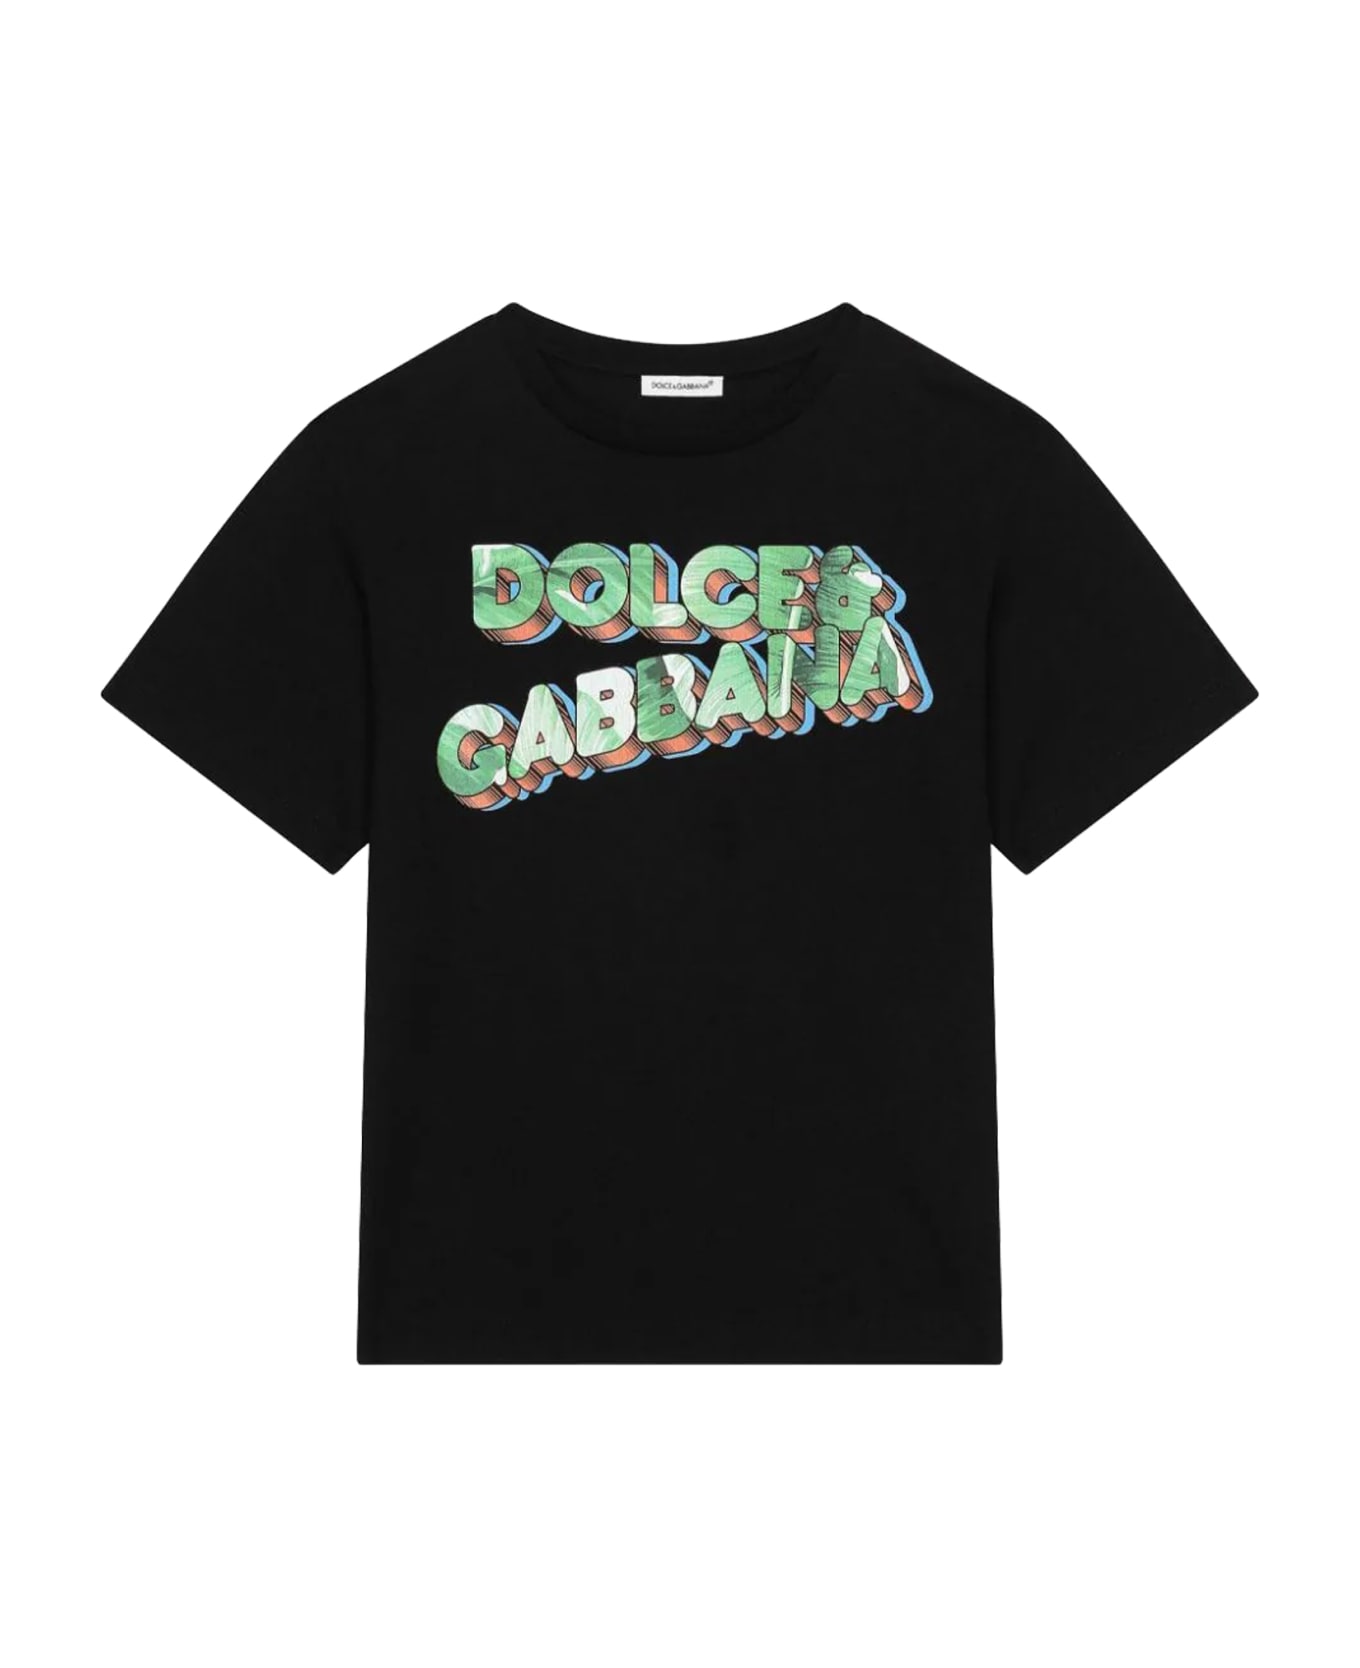 Dolce & Gabbana T-shirt - Back